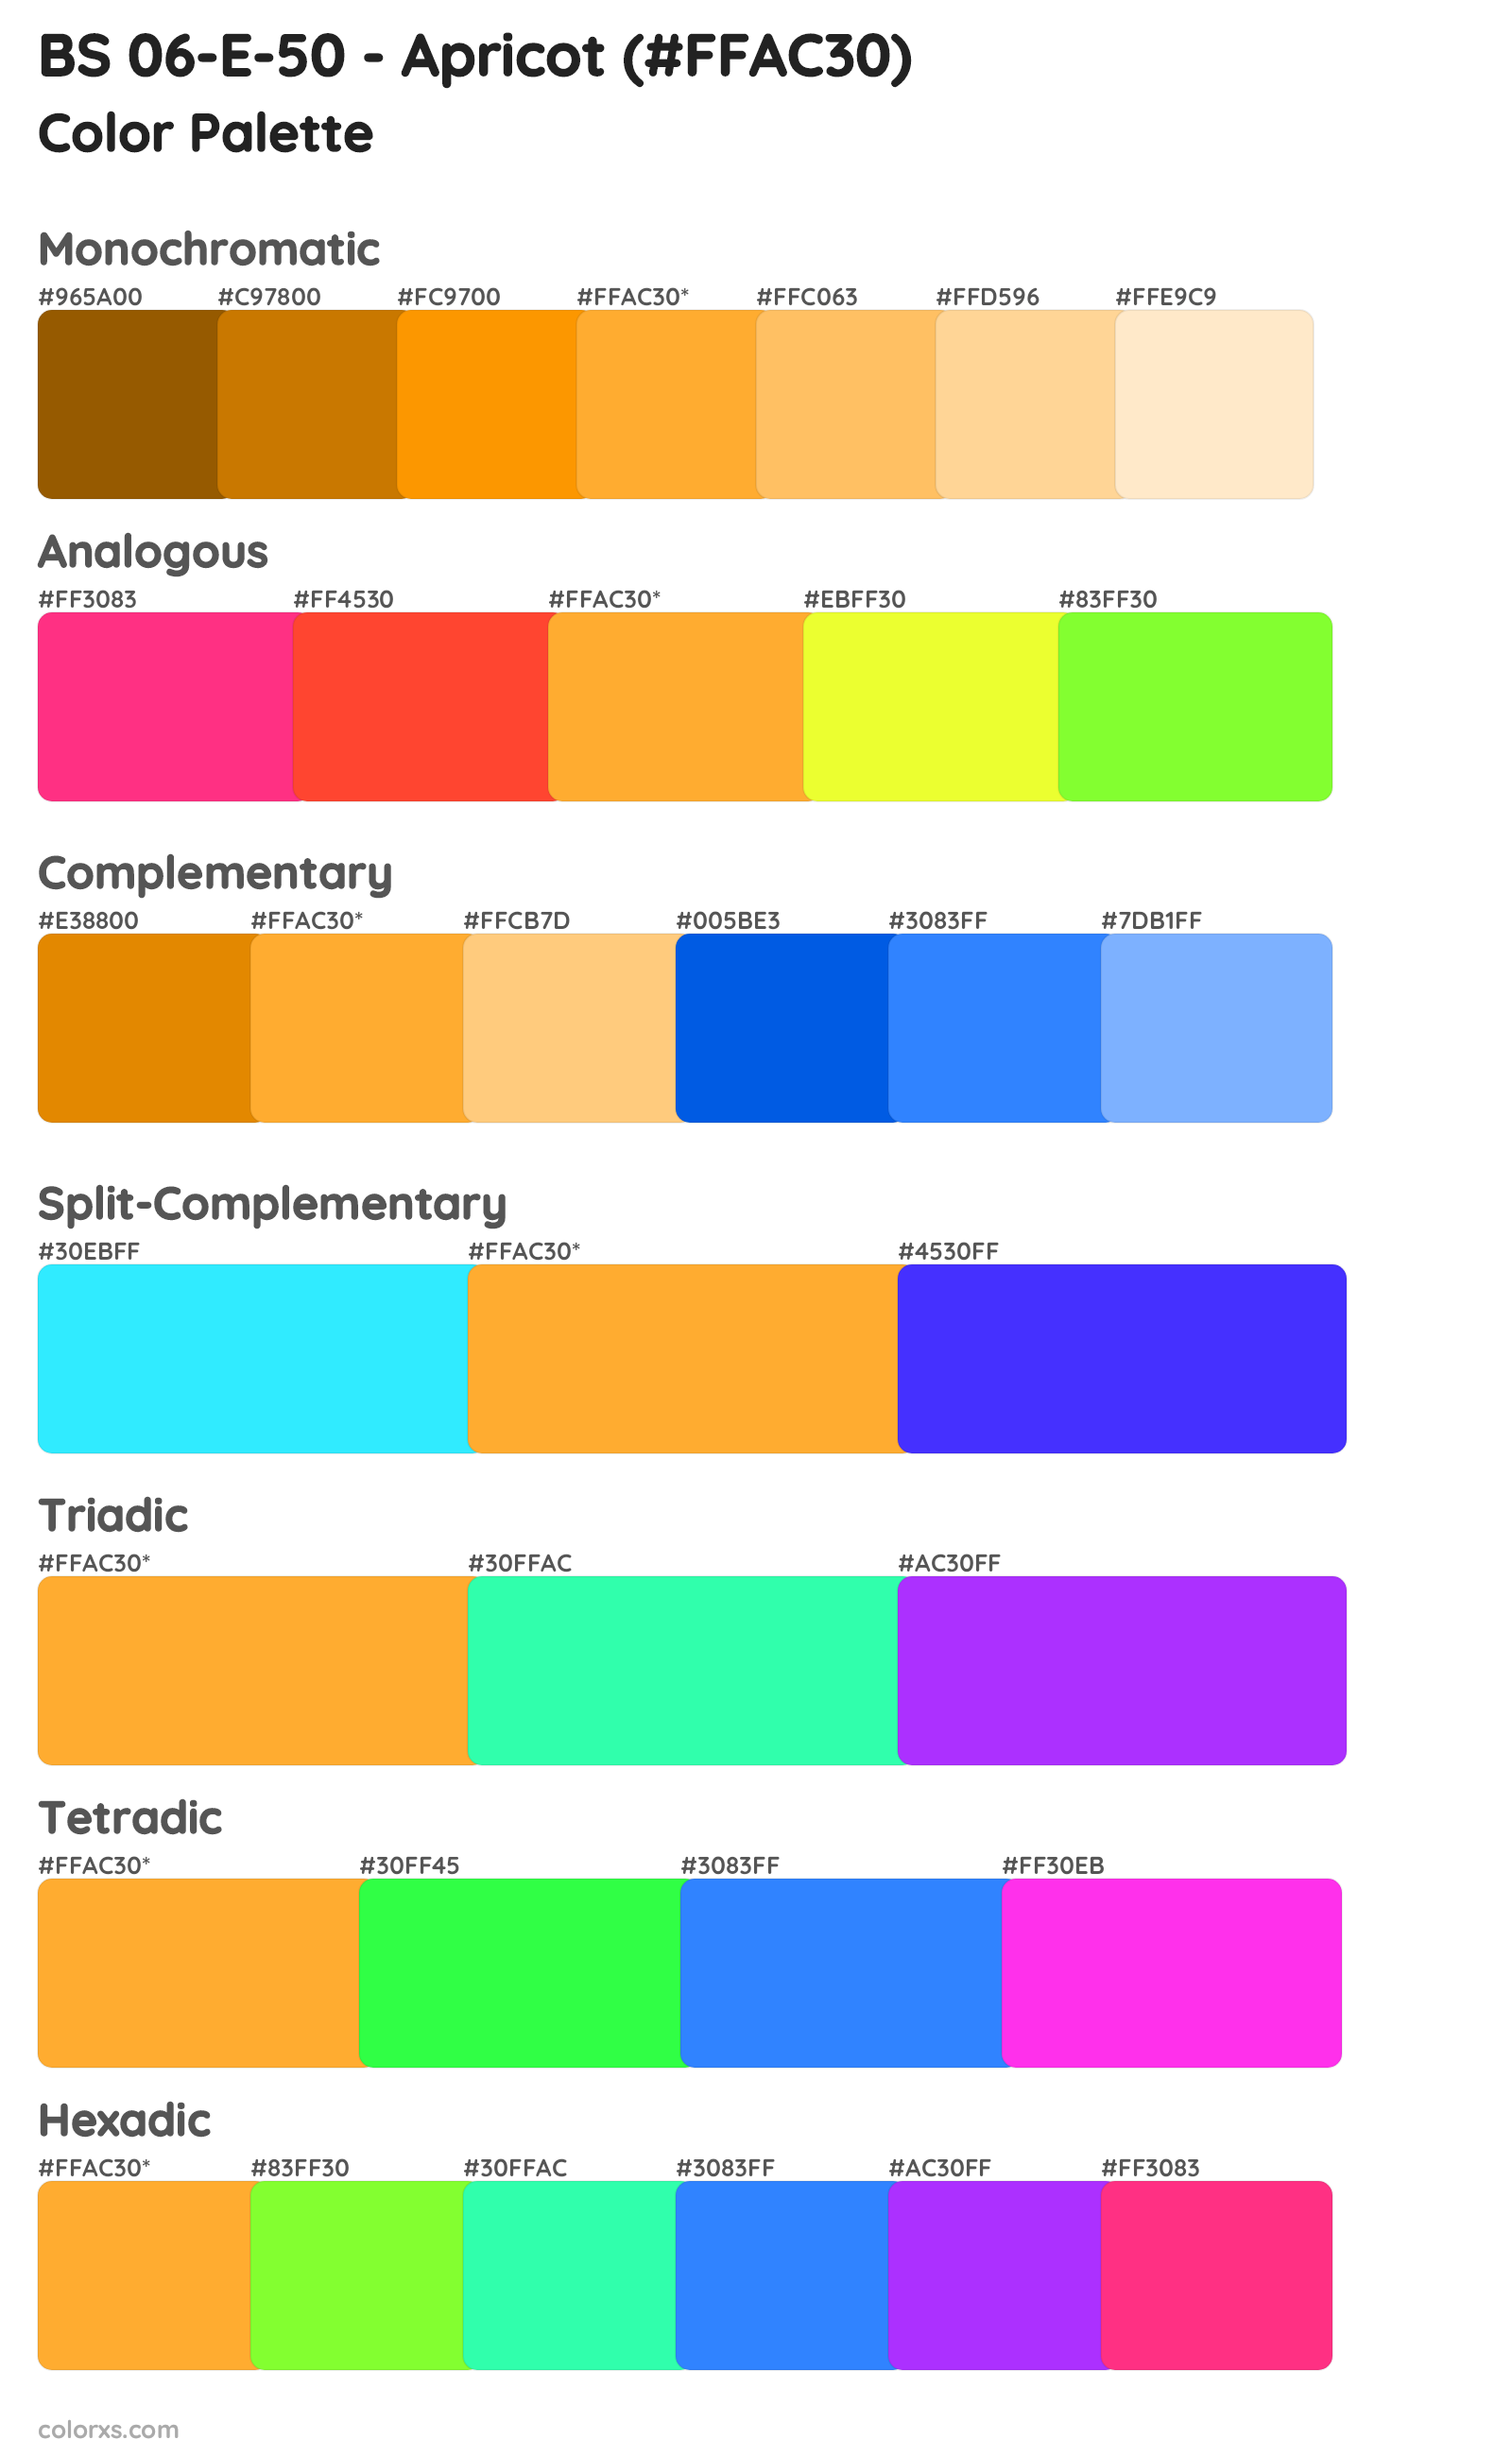 BS 06-E-50 - Apricot Color Scheme Palettes